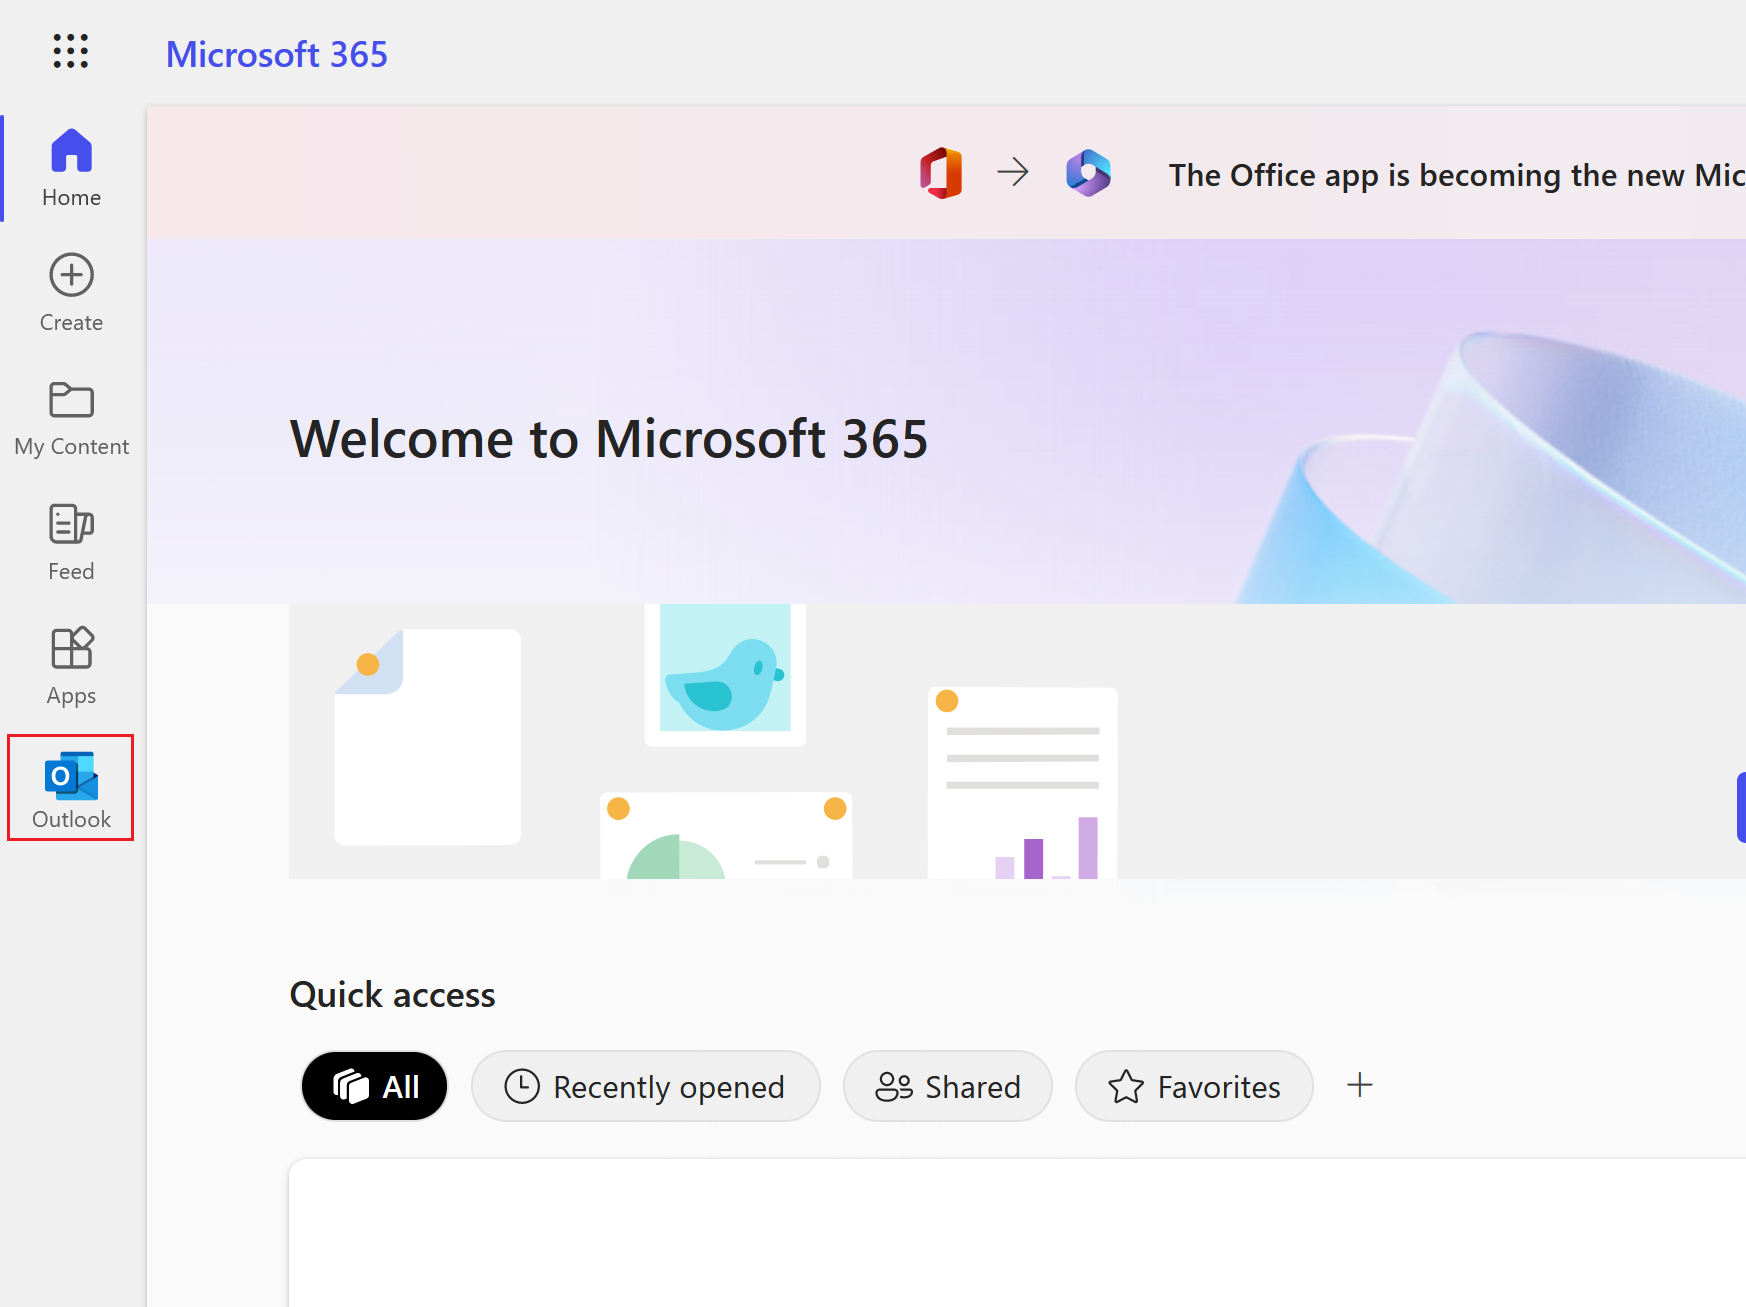 selecciona el icono de Outlook para abrir tu bandeja de entrada